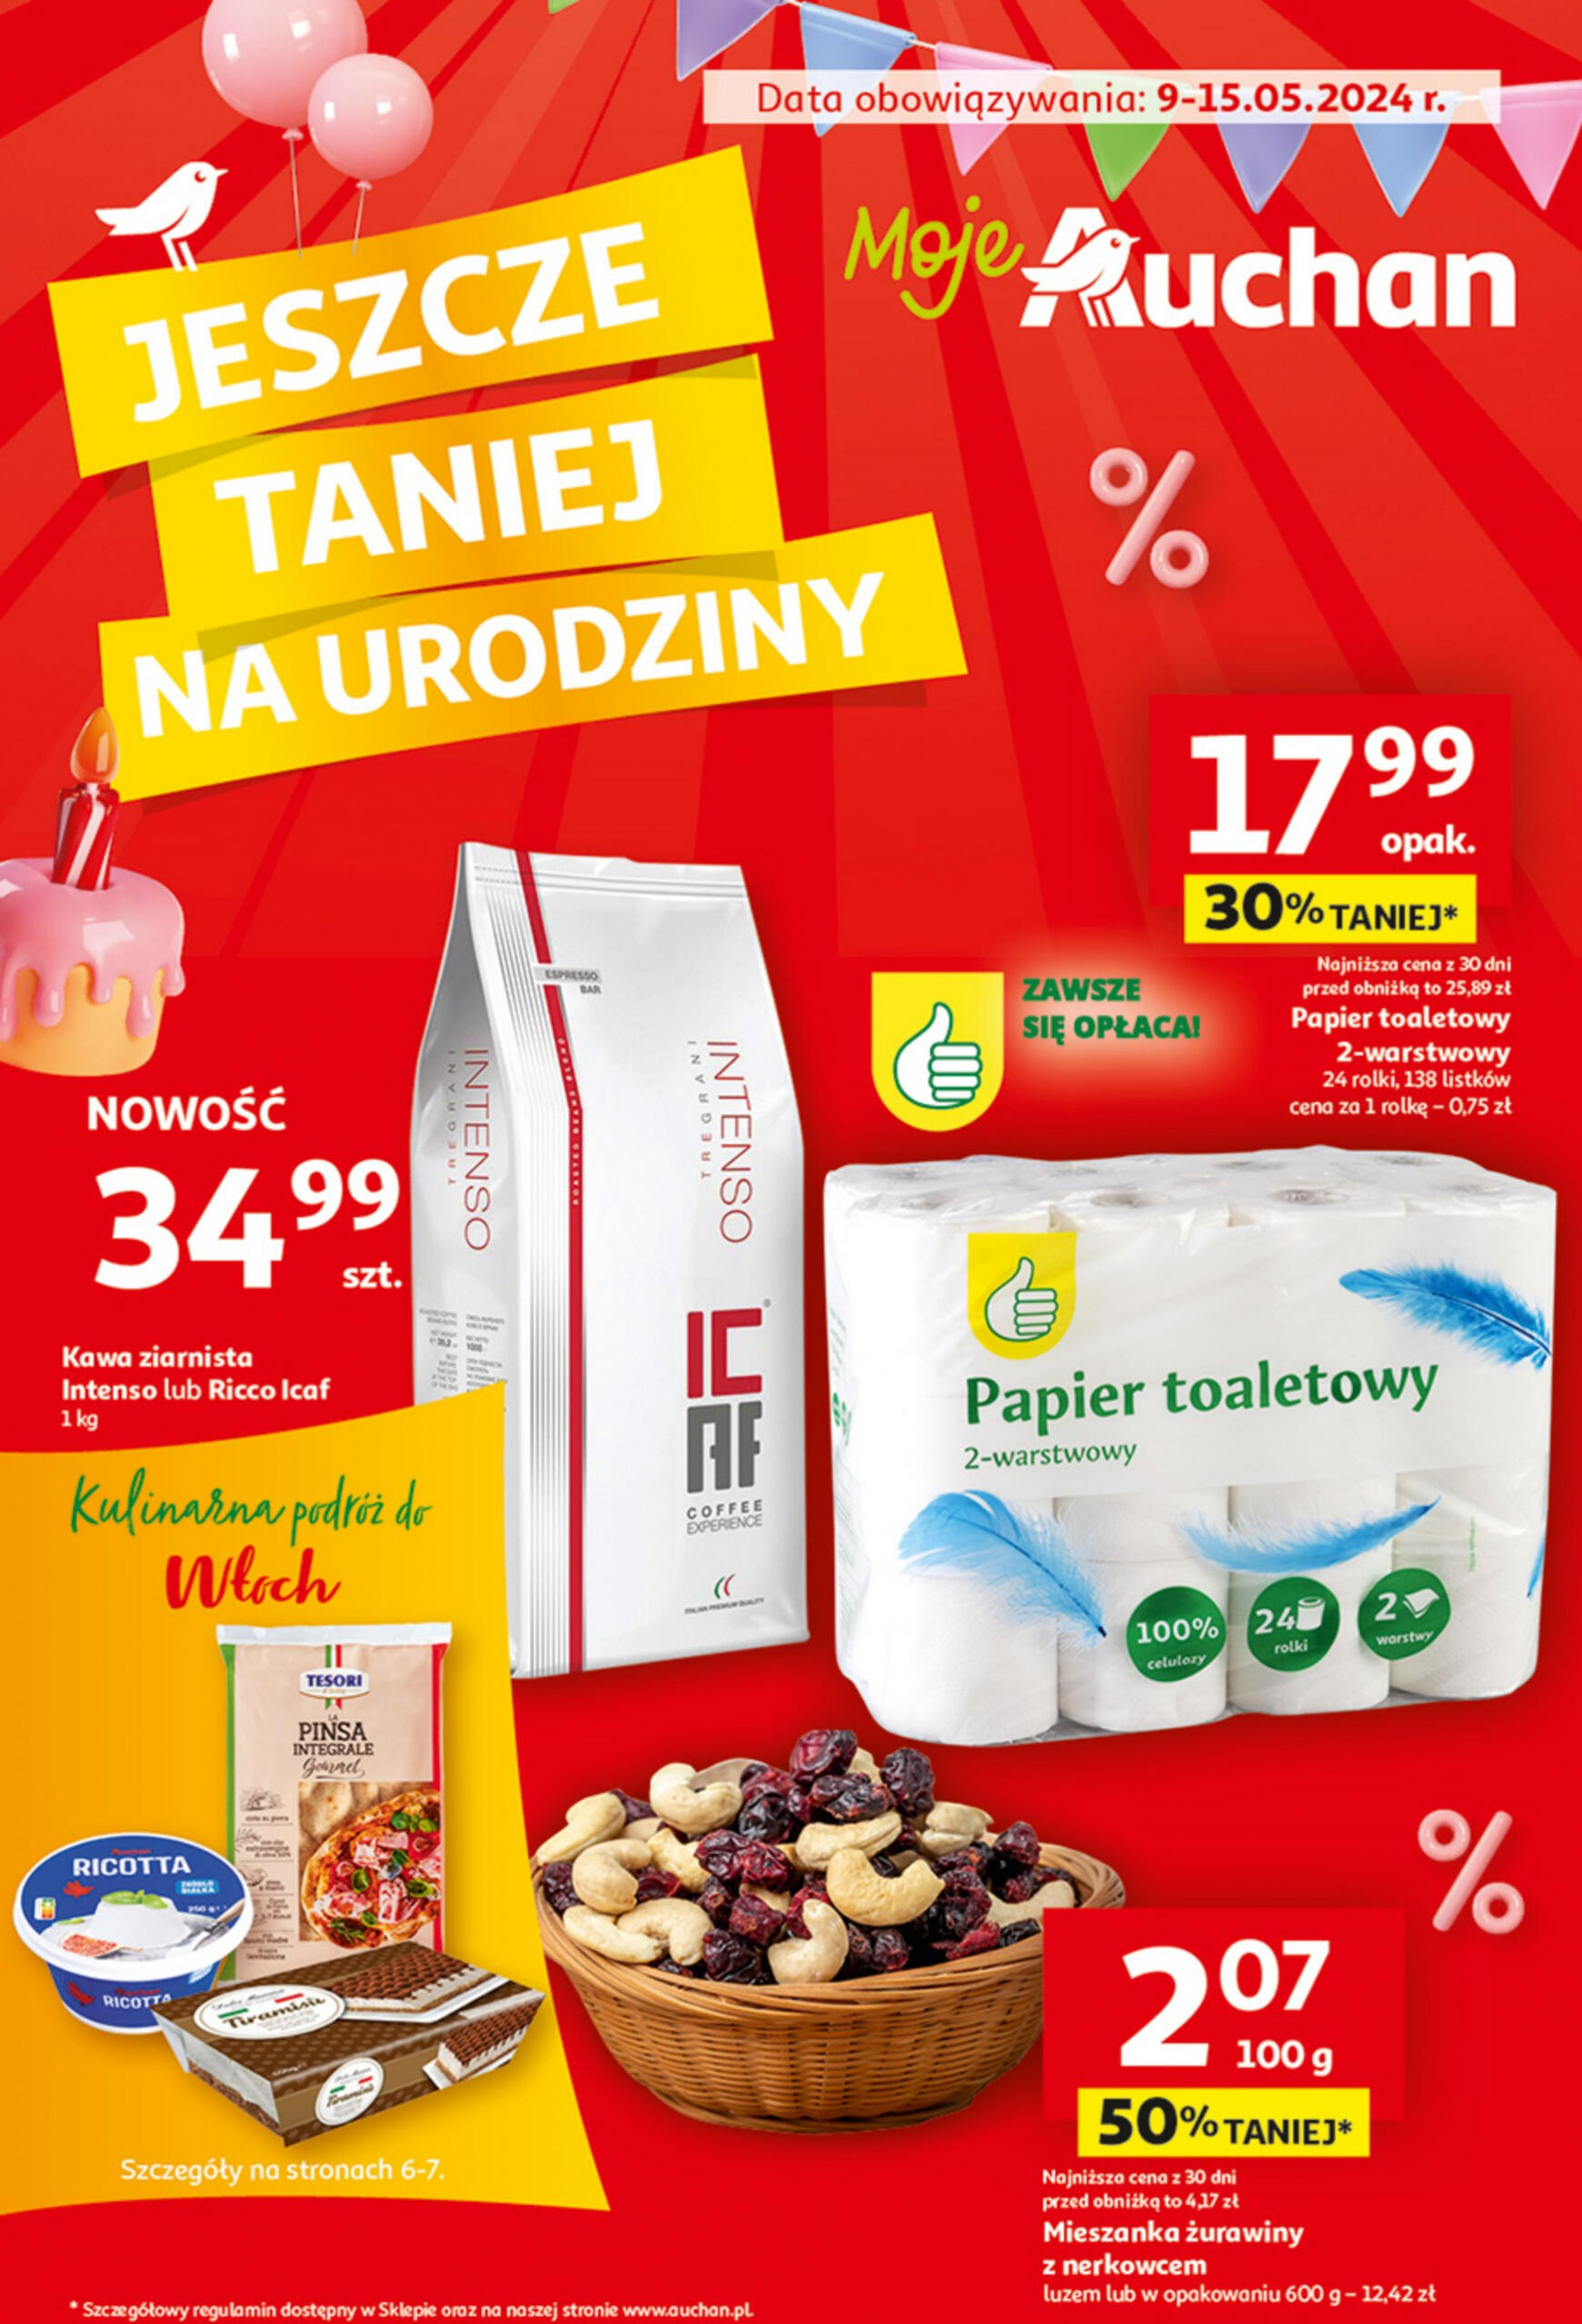 auchan - Moje Auchan - Gazetka Jeszcze taniej na urodziny gazetka aktualna ważna od 09.05. - 15.05. - page: 1